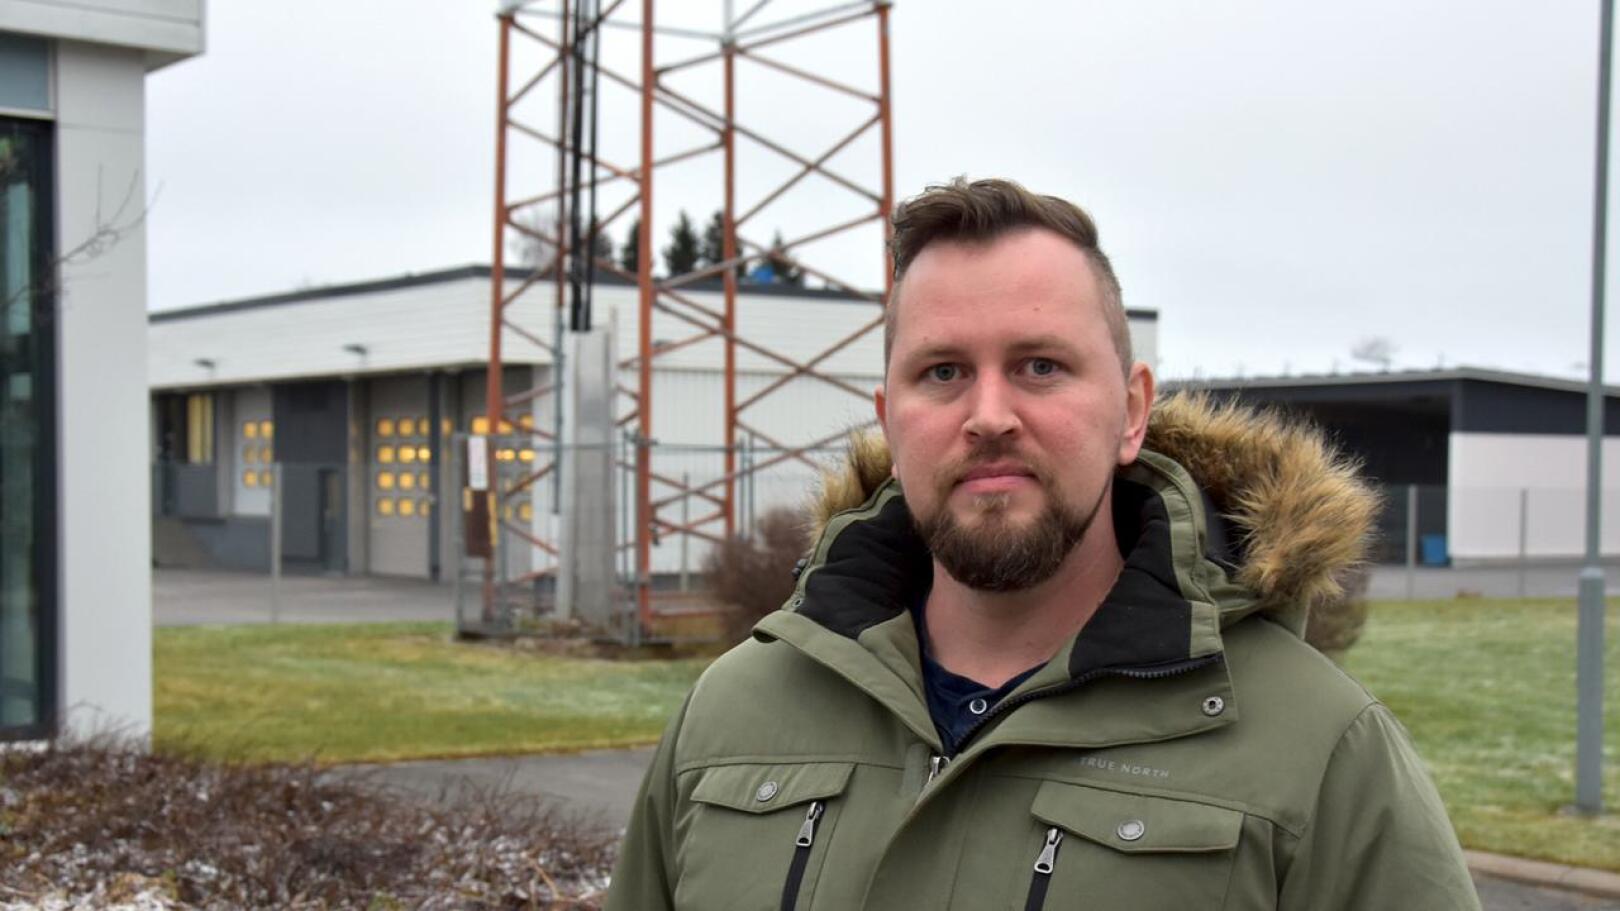 Korpela Energian myynti-insinööri Kari Sipilä on ollut valmistelemassa tuoteuudistusta. 